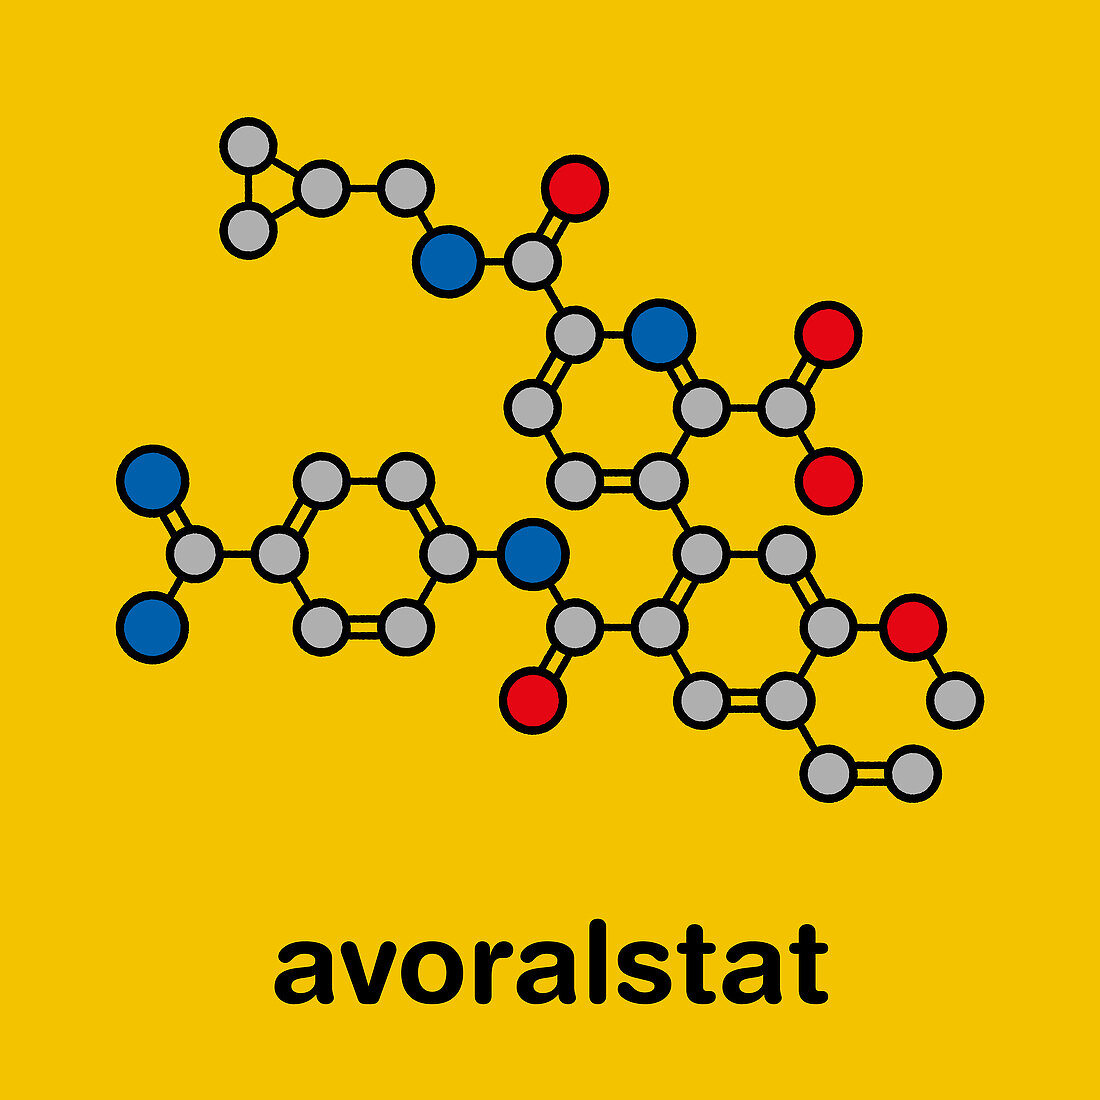 Avoralstat hereditary angioedema drug molecule, illustration